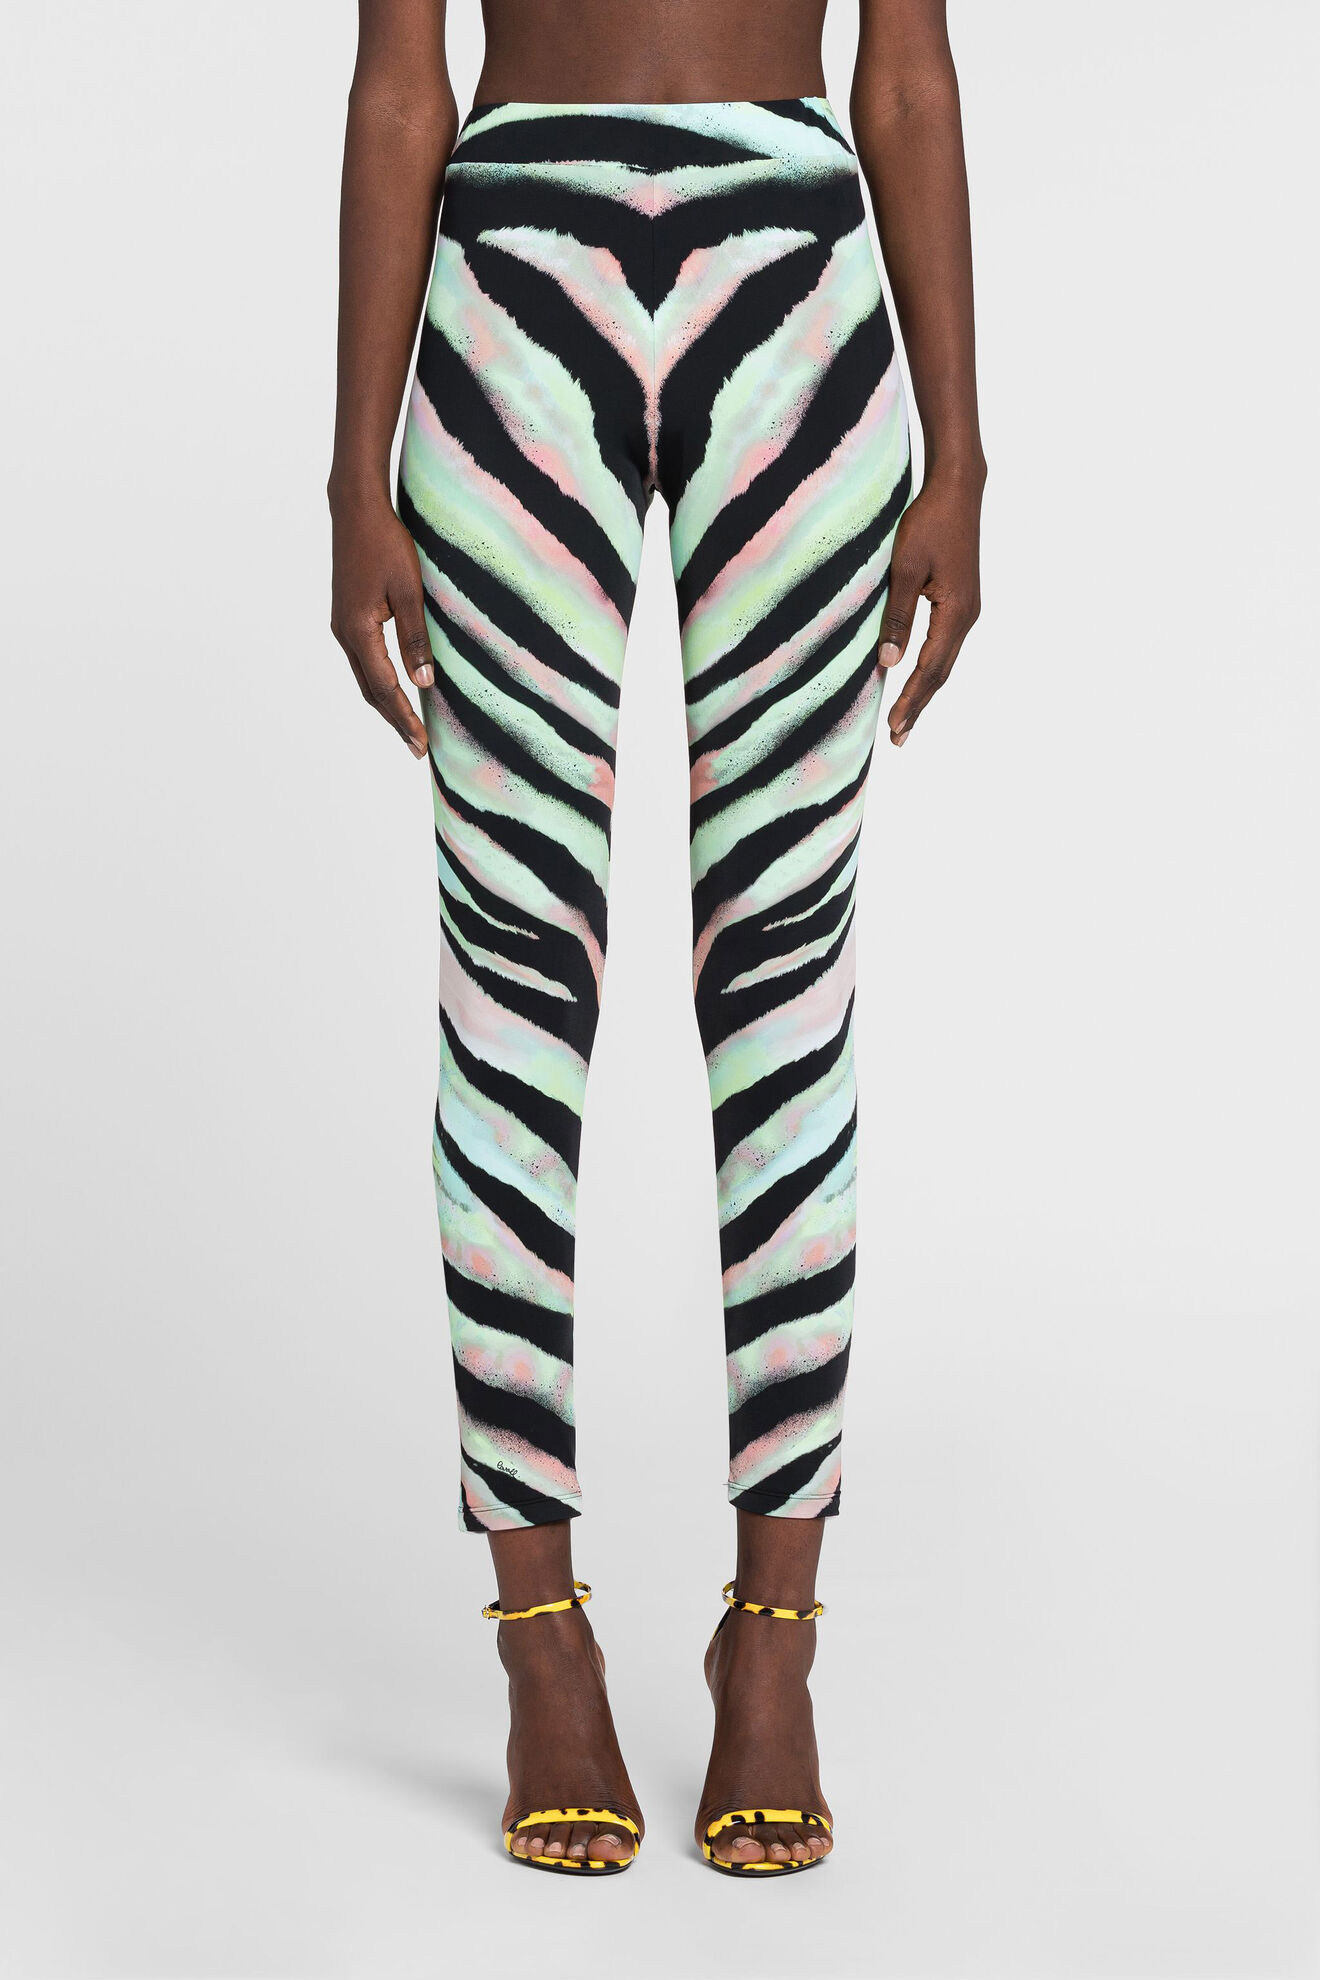 Love Yourself Zebra Print Leggings (Coral Pastel) - ShopFlyBrands